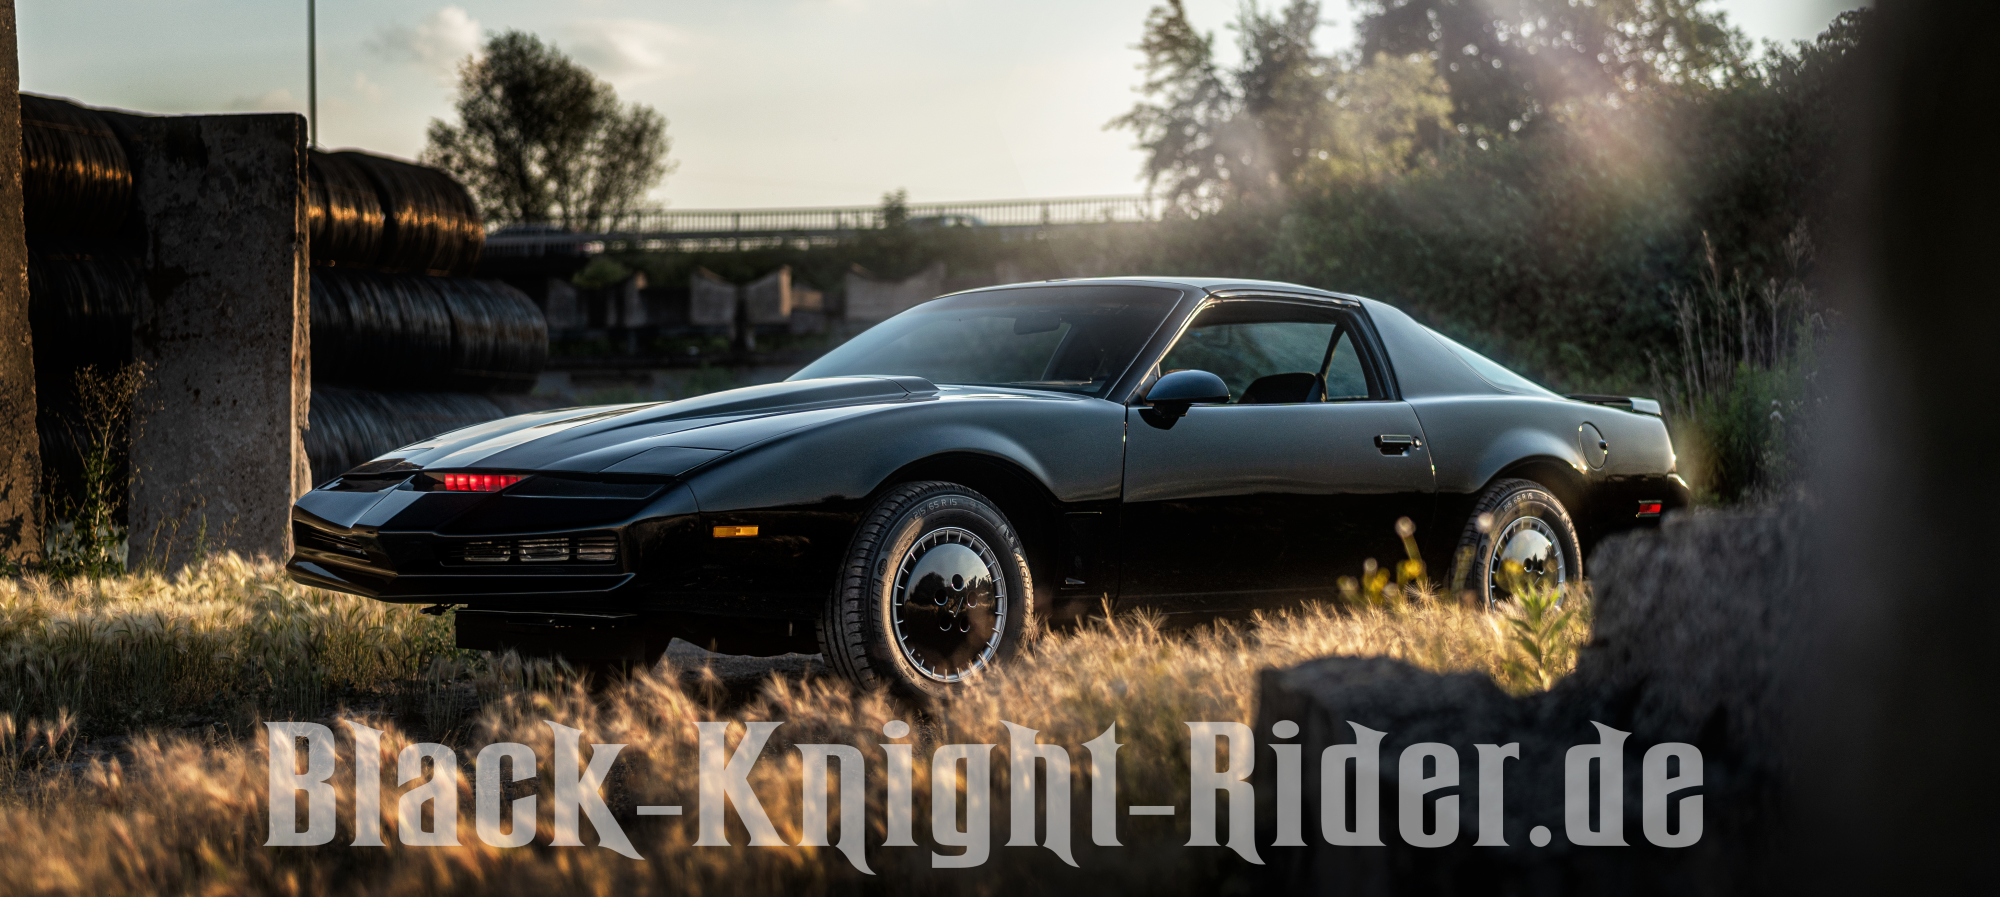 Black-Knight Rider.de | Das Wunderauto aus dem Sauerland